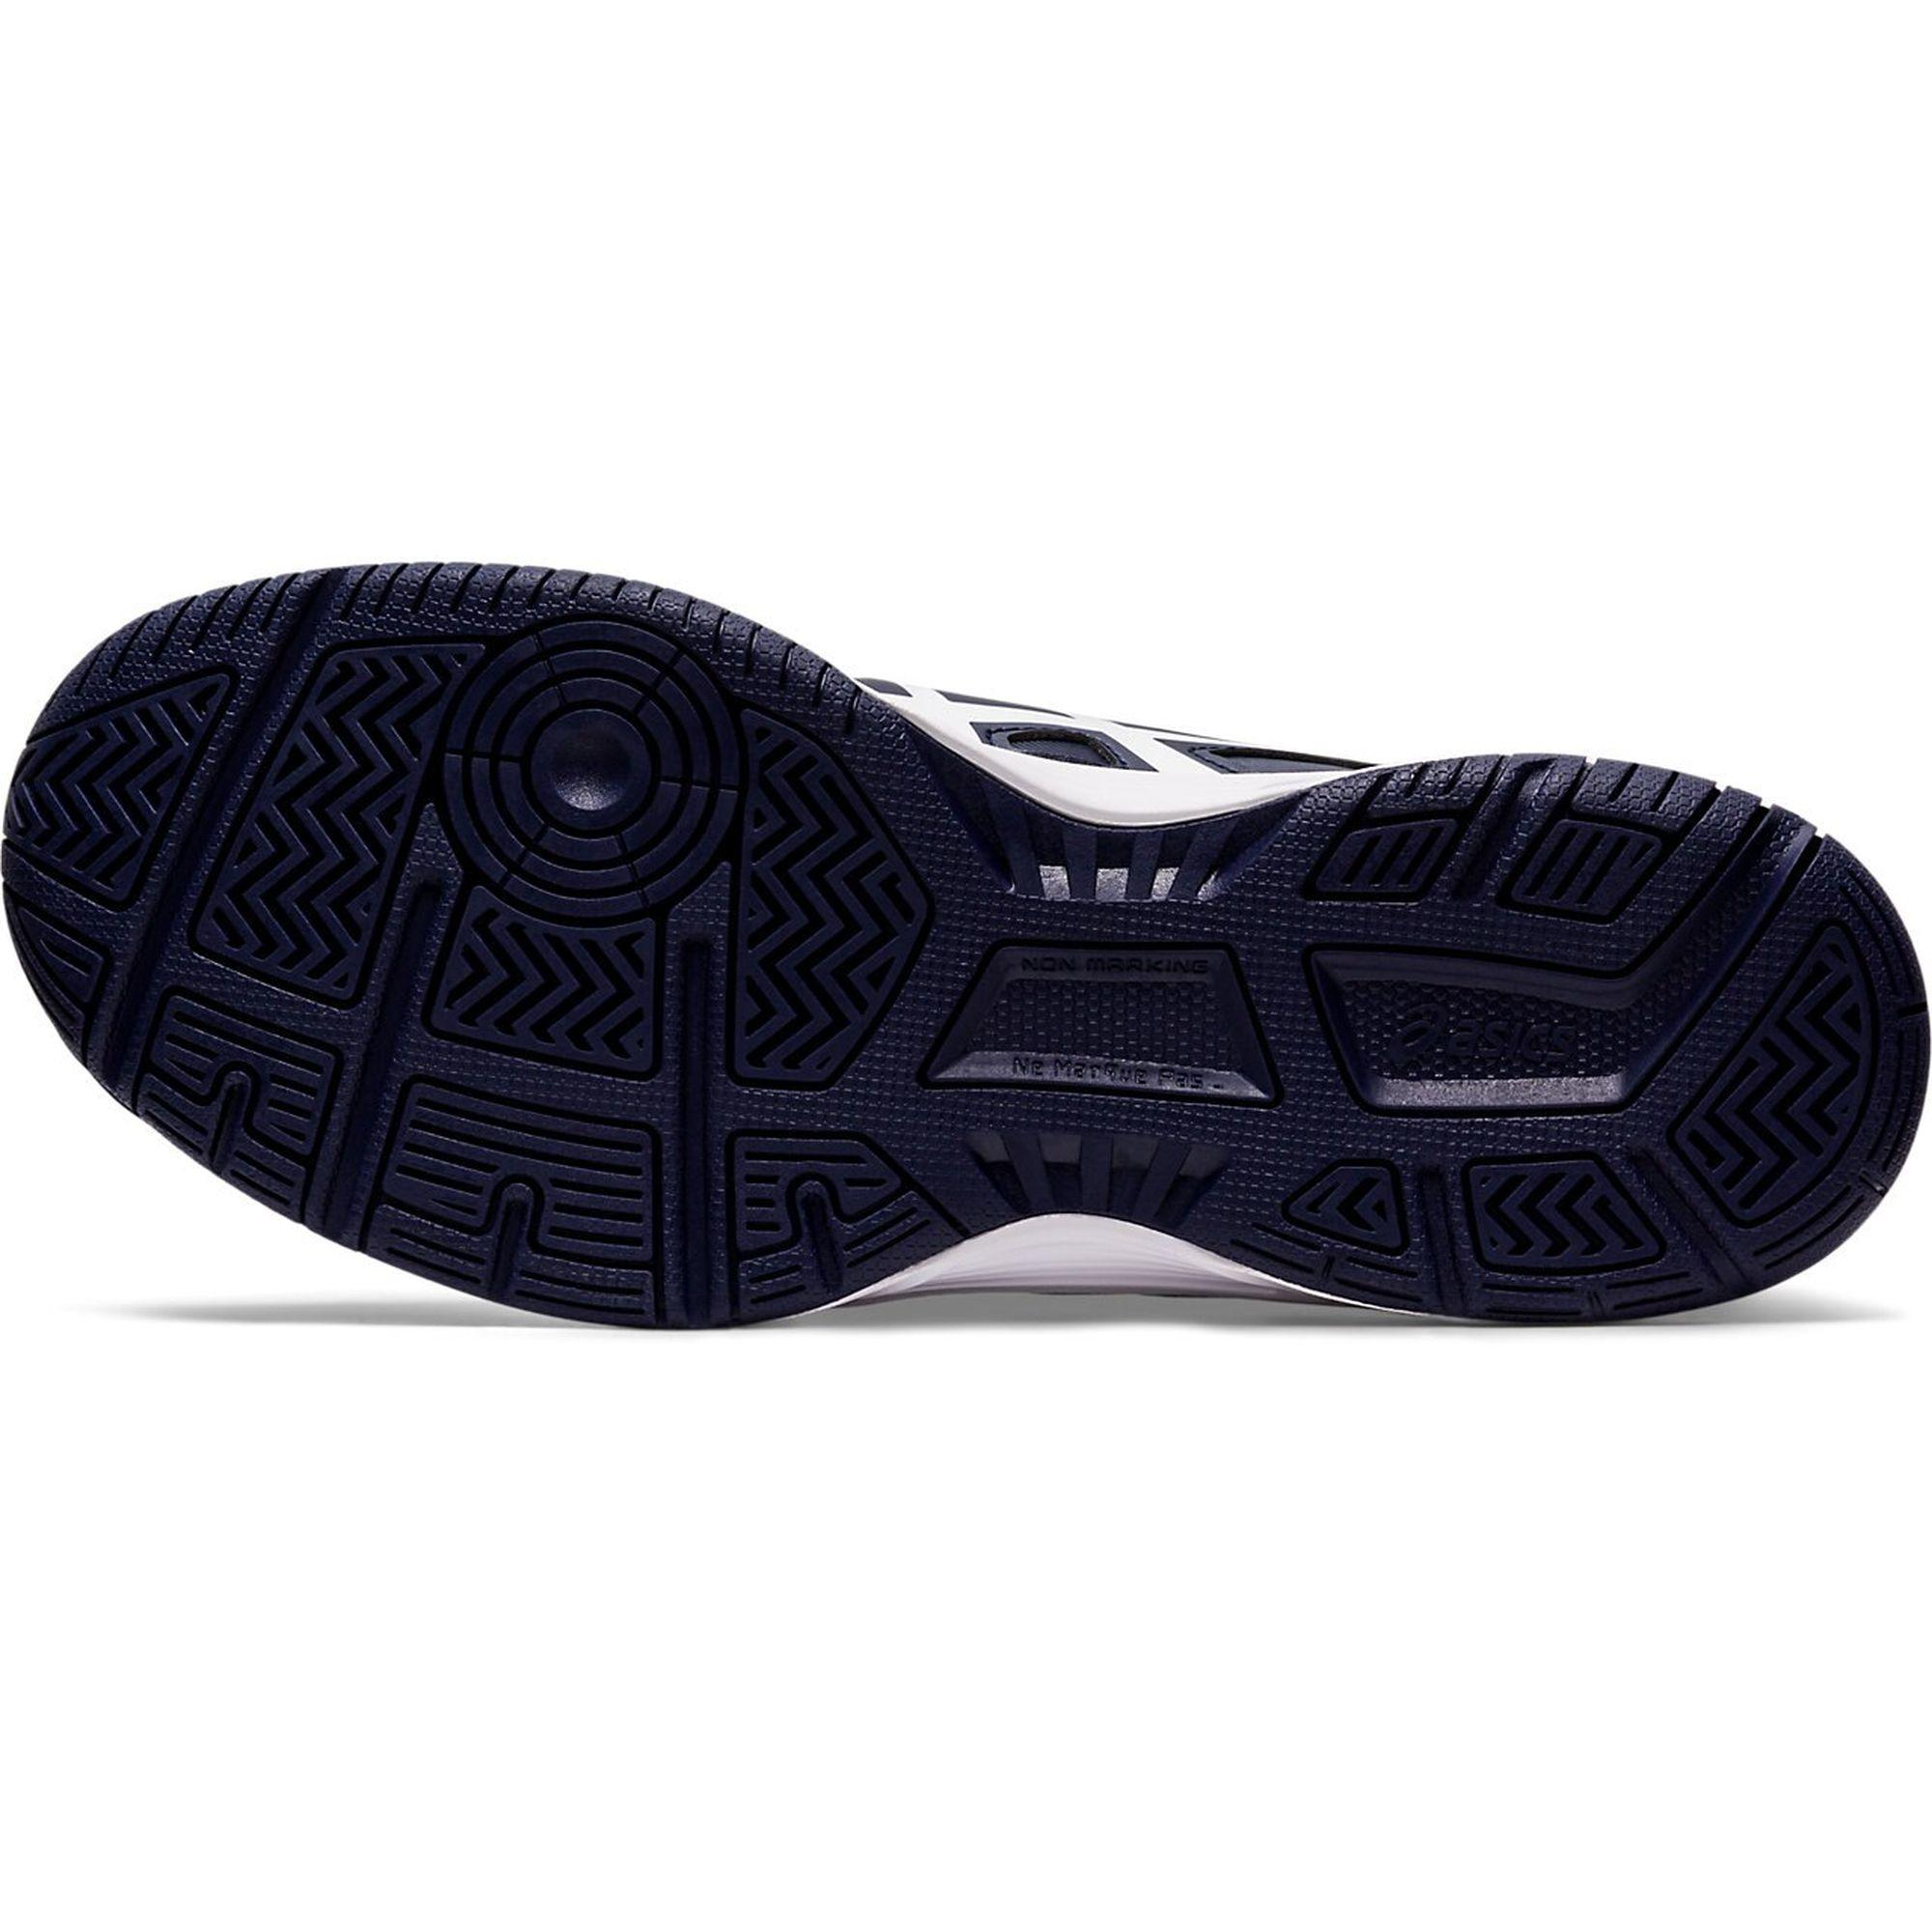 black slide on tennis shoes